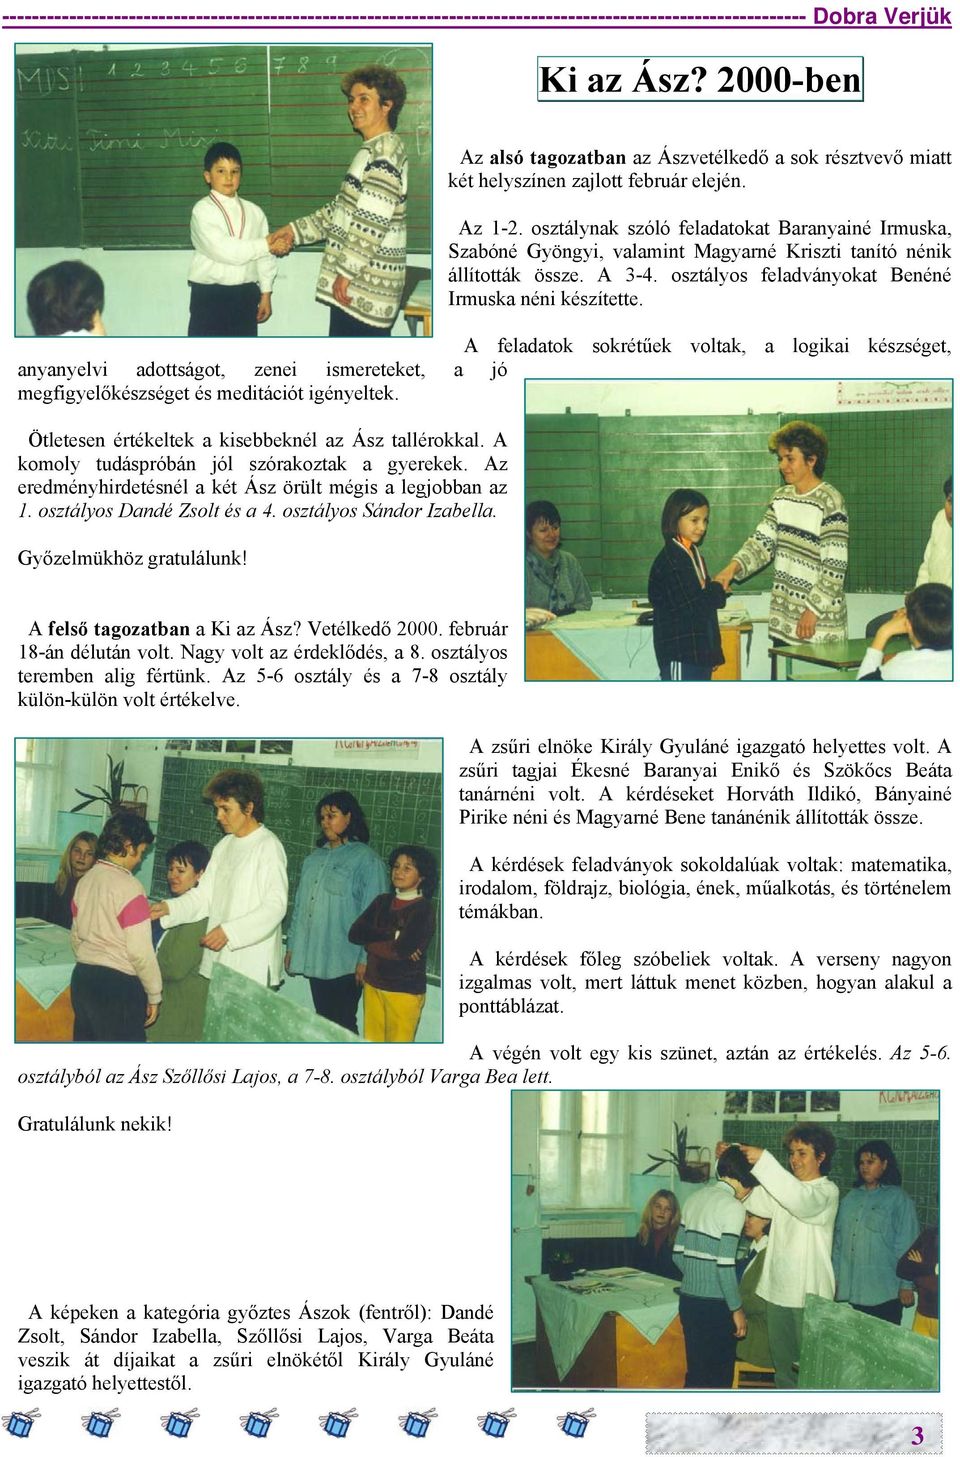 osztálynak szóló feladatokat Baranyainé Irmuska, Szabóné Gyöngyi, valamint Magyarné Kriszti tanító nénik állították össze. A 3-4. osztályos feladványokat Benéné Irmuska néni készítette.